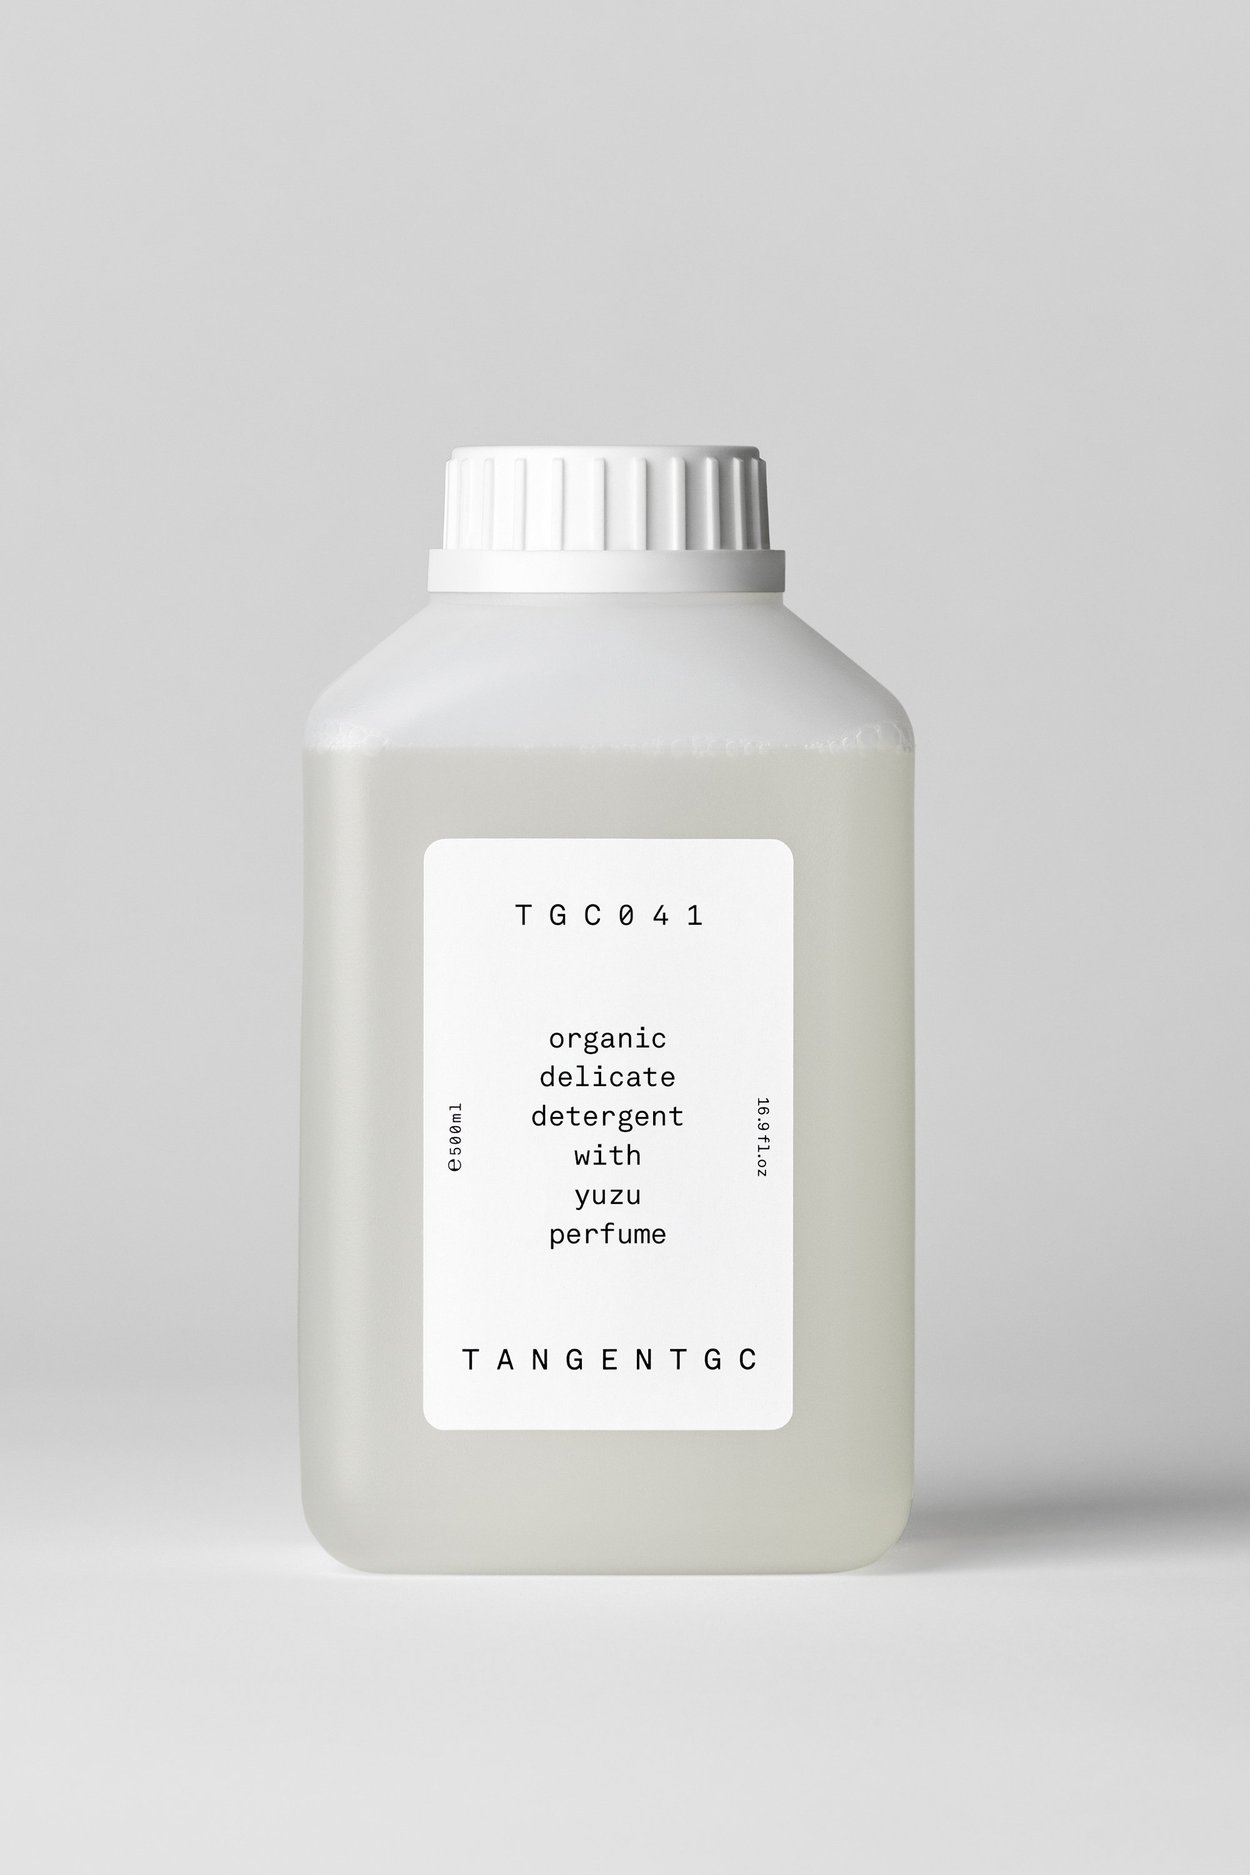 arket-delicate-organic-detergent-yuzu